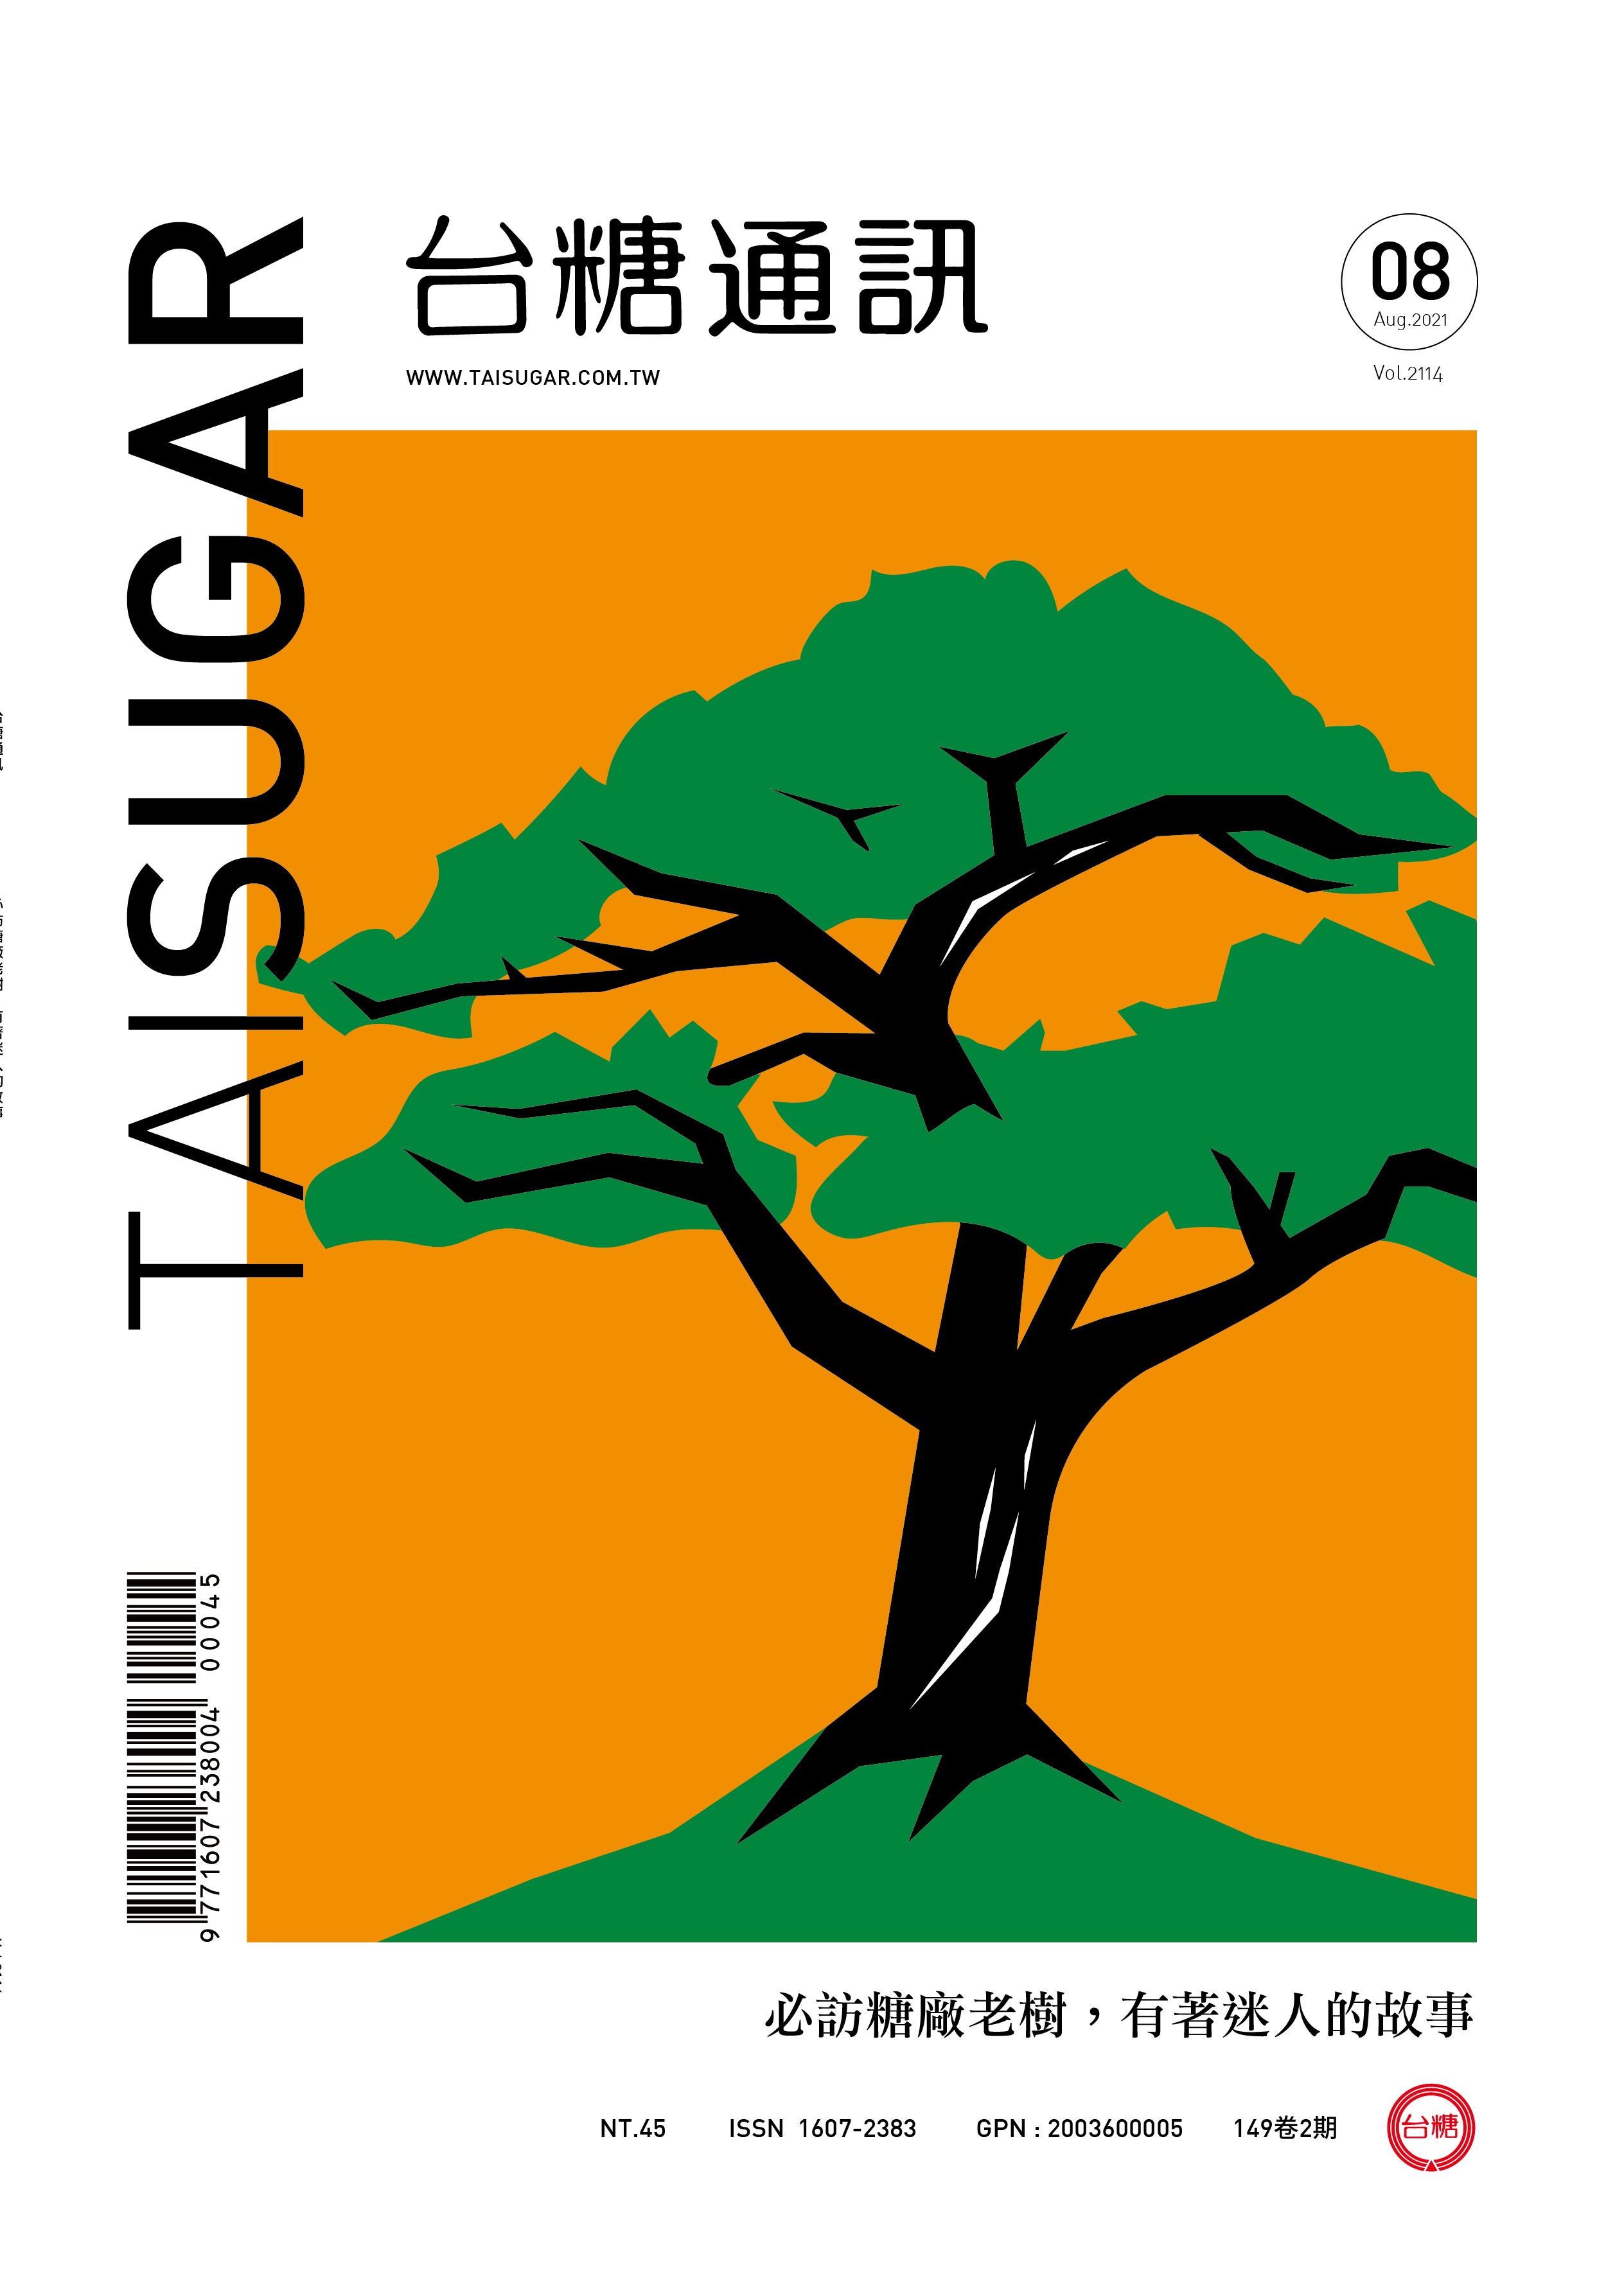 必訪台糖老樹  有著迷人的故事-封面圖